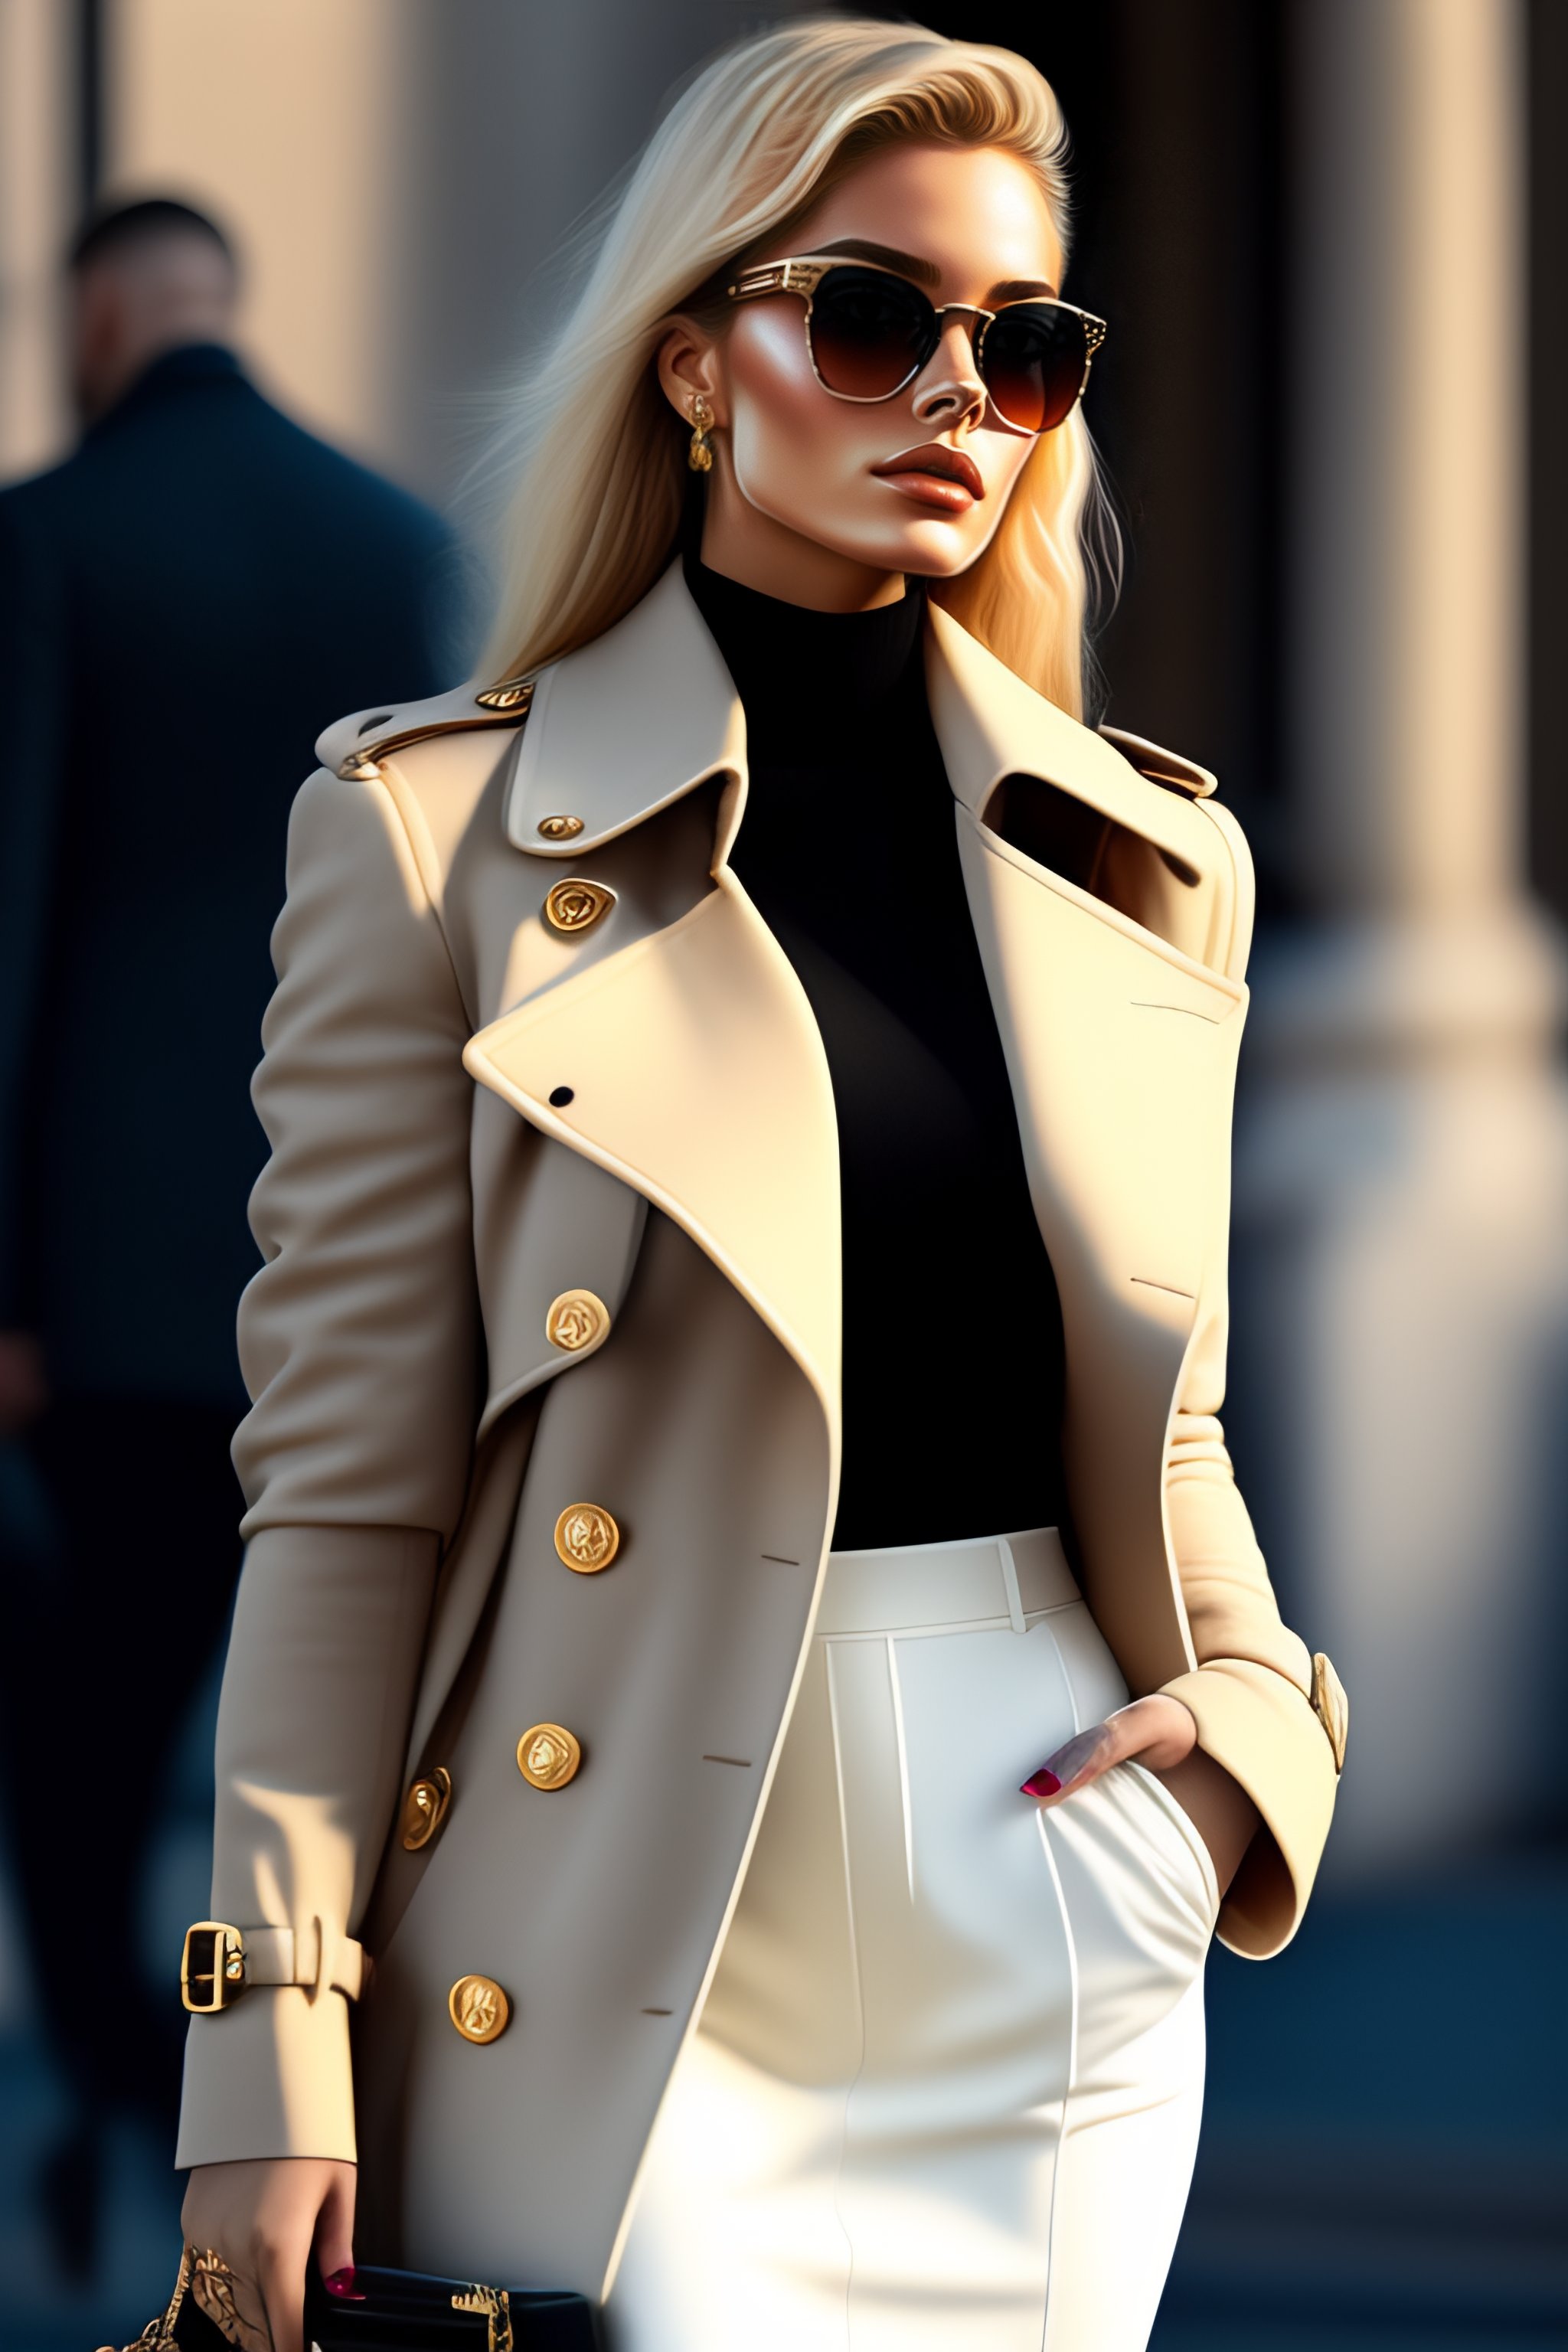 Louis Vuitton Womens Trench Coats